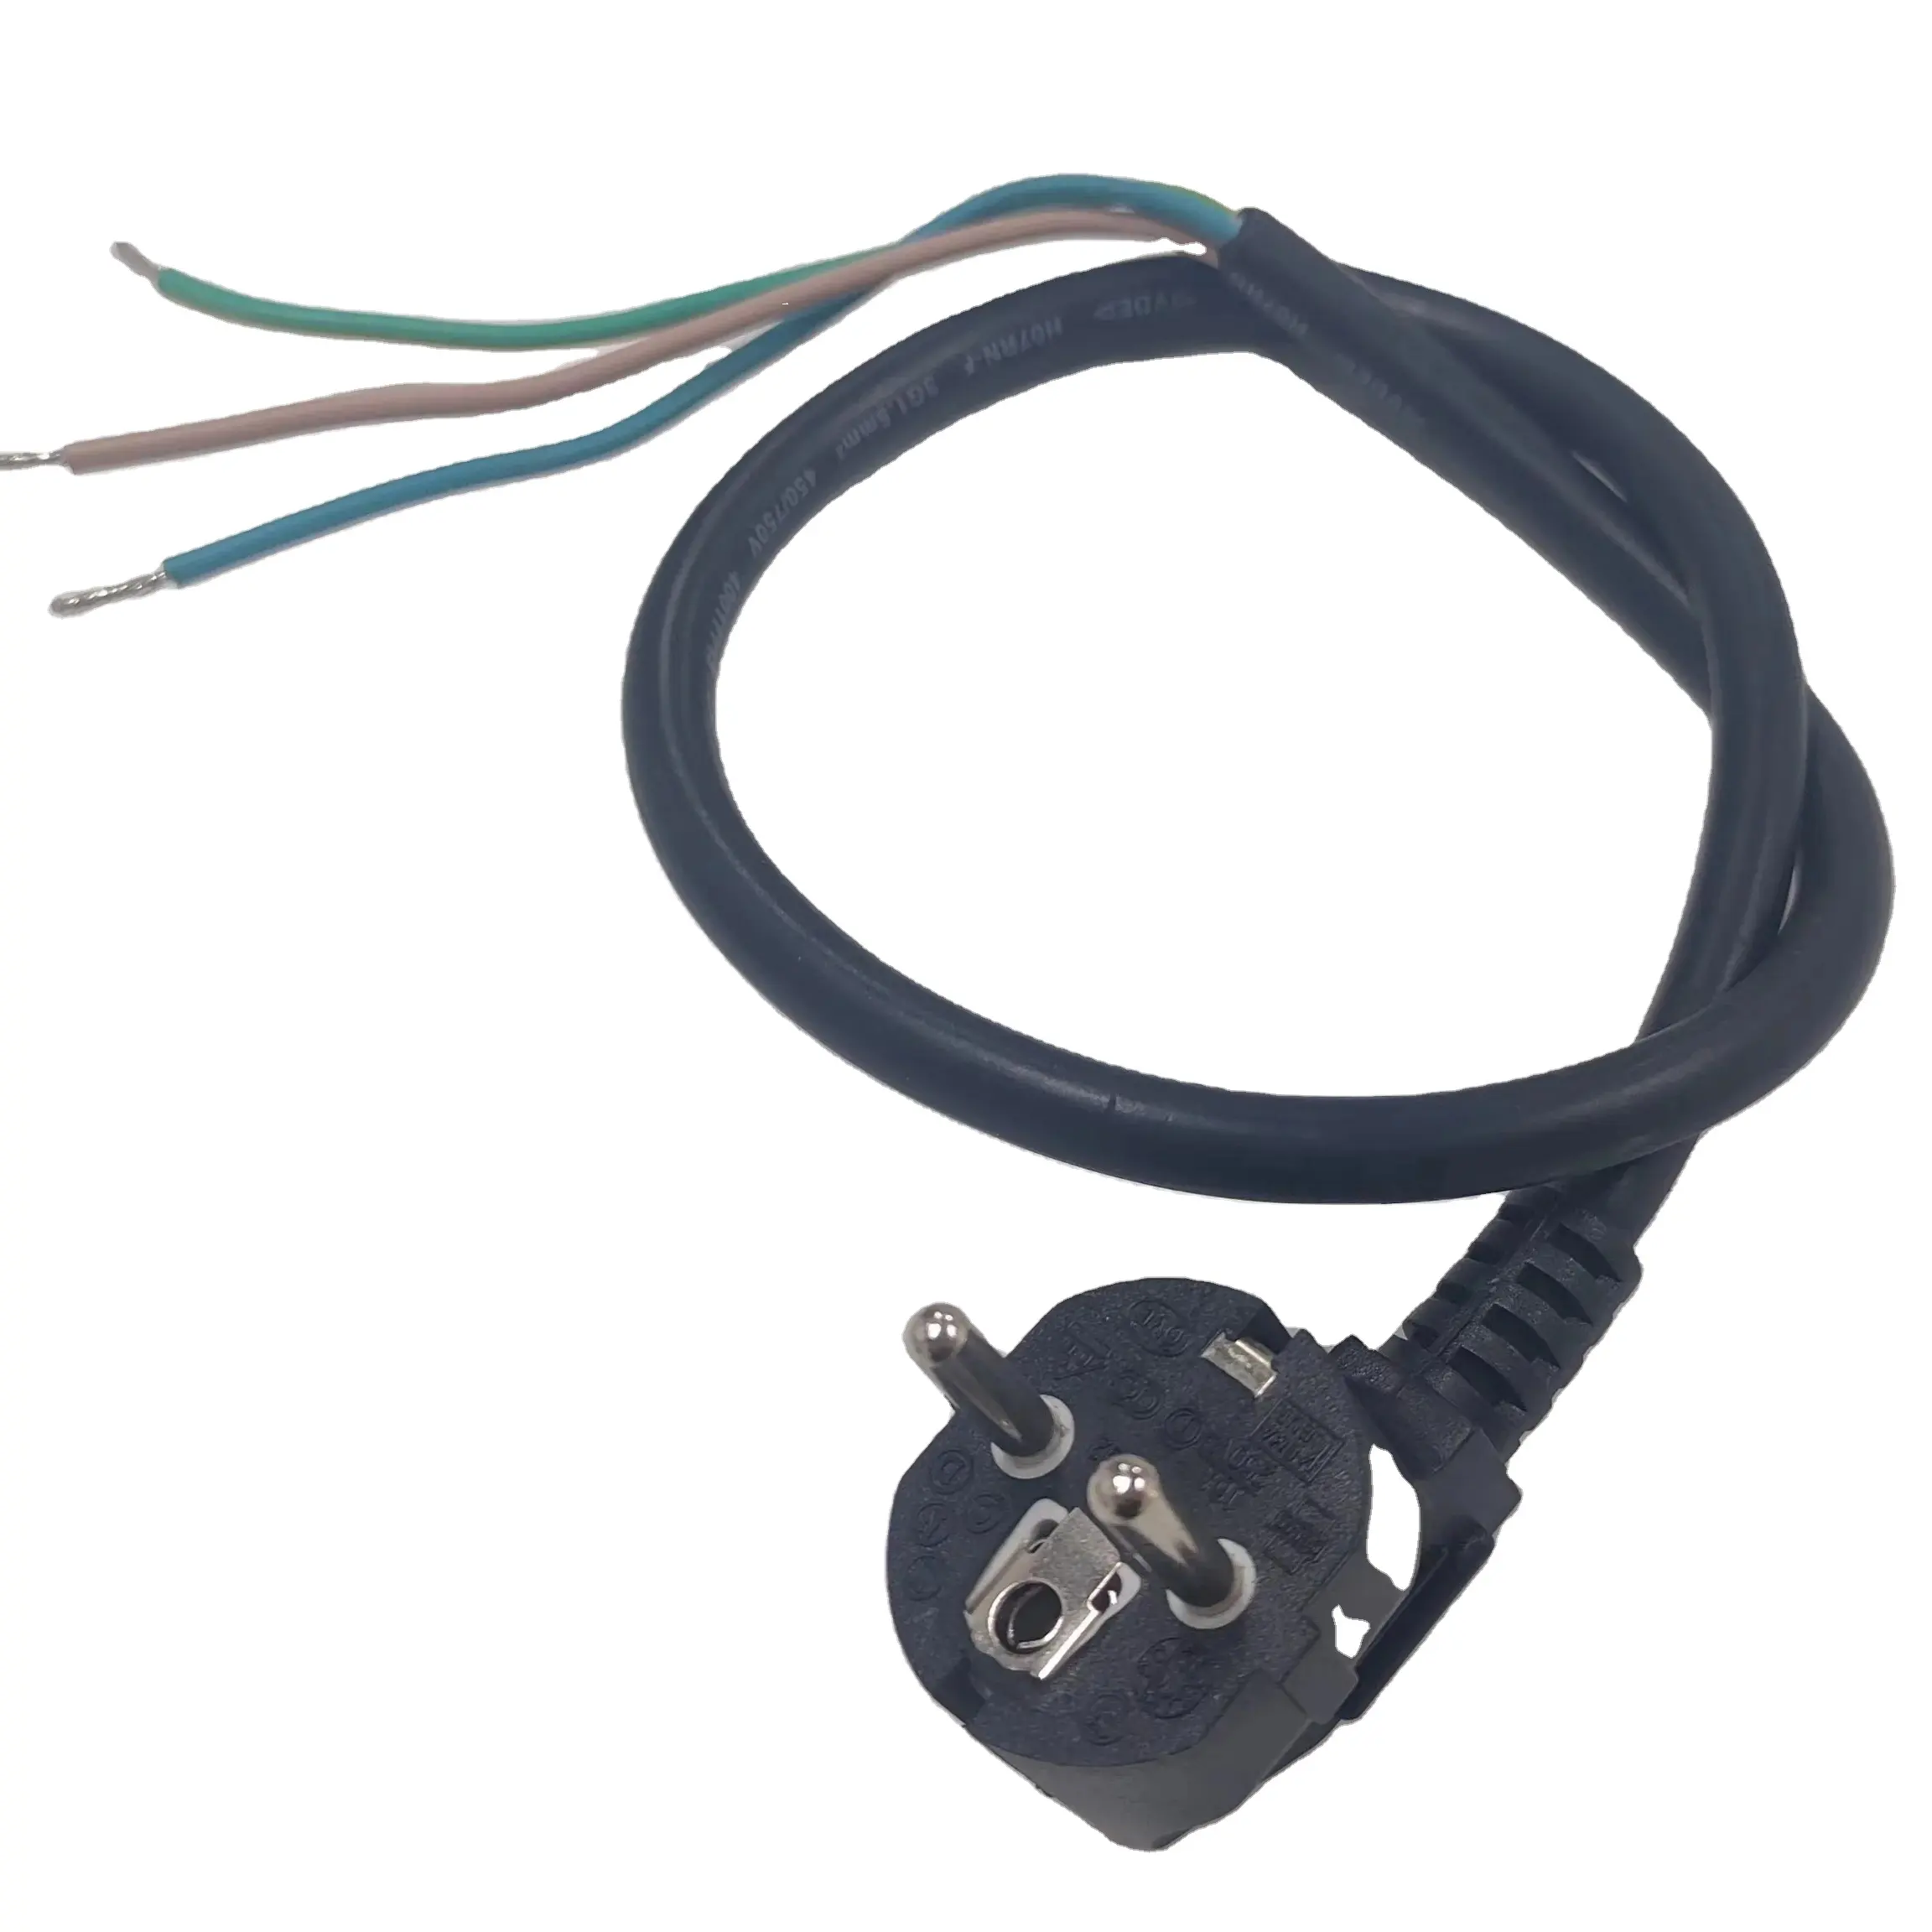 Netz kabel Netz kabelst ecker 2-poliger 2-poliger EU-Stecker an verzinnten, abisolier ten Netz kabeln